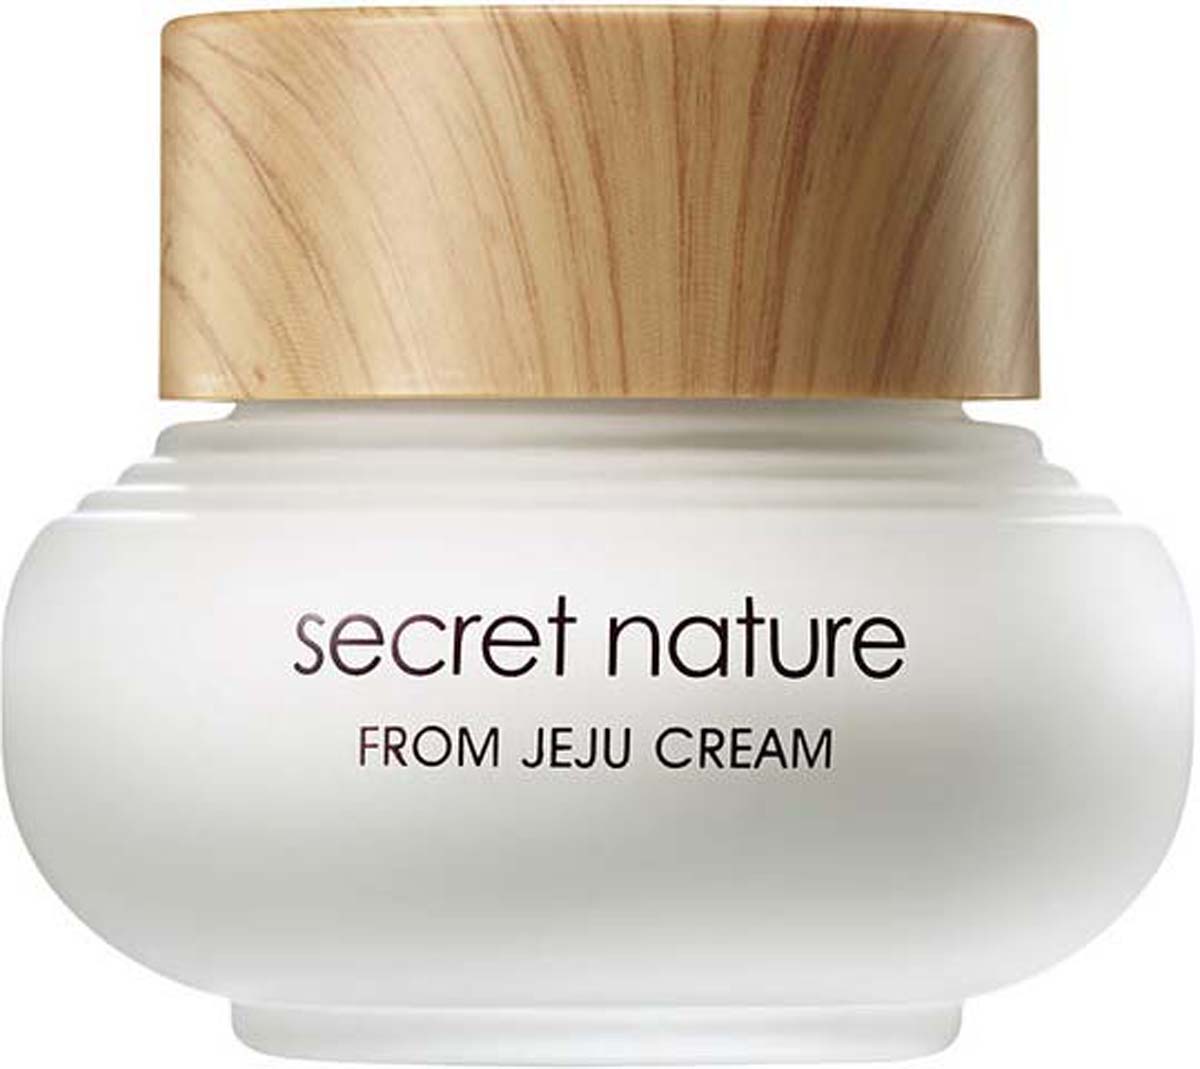 купить Secret Nature From Jeju Cream Увлажняющий крем с зеленым чаем, 50 мл - заказ и доставка в Москве и Санкт-Петербурге